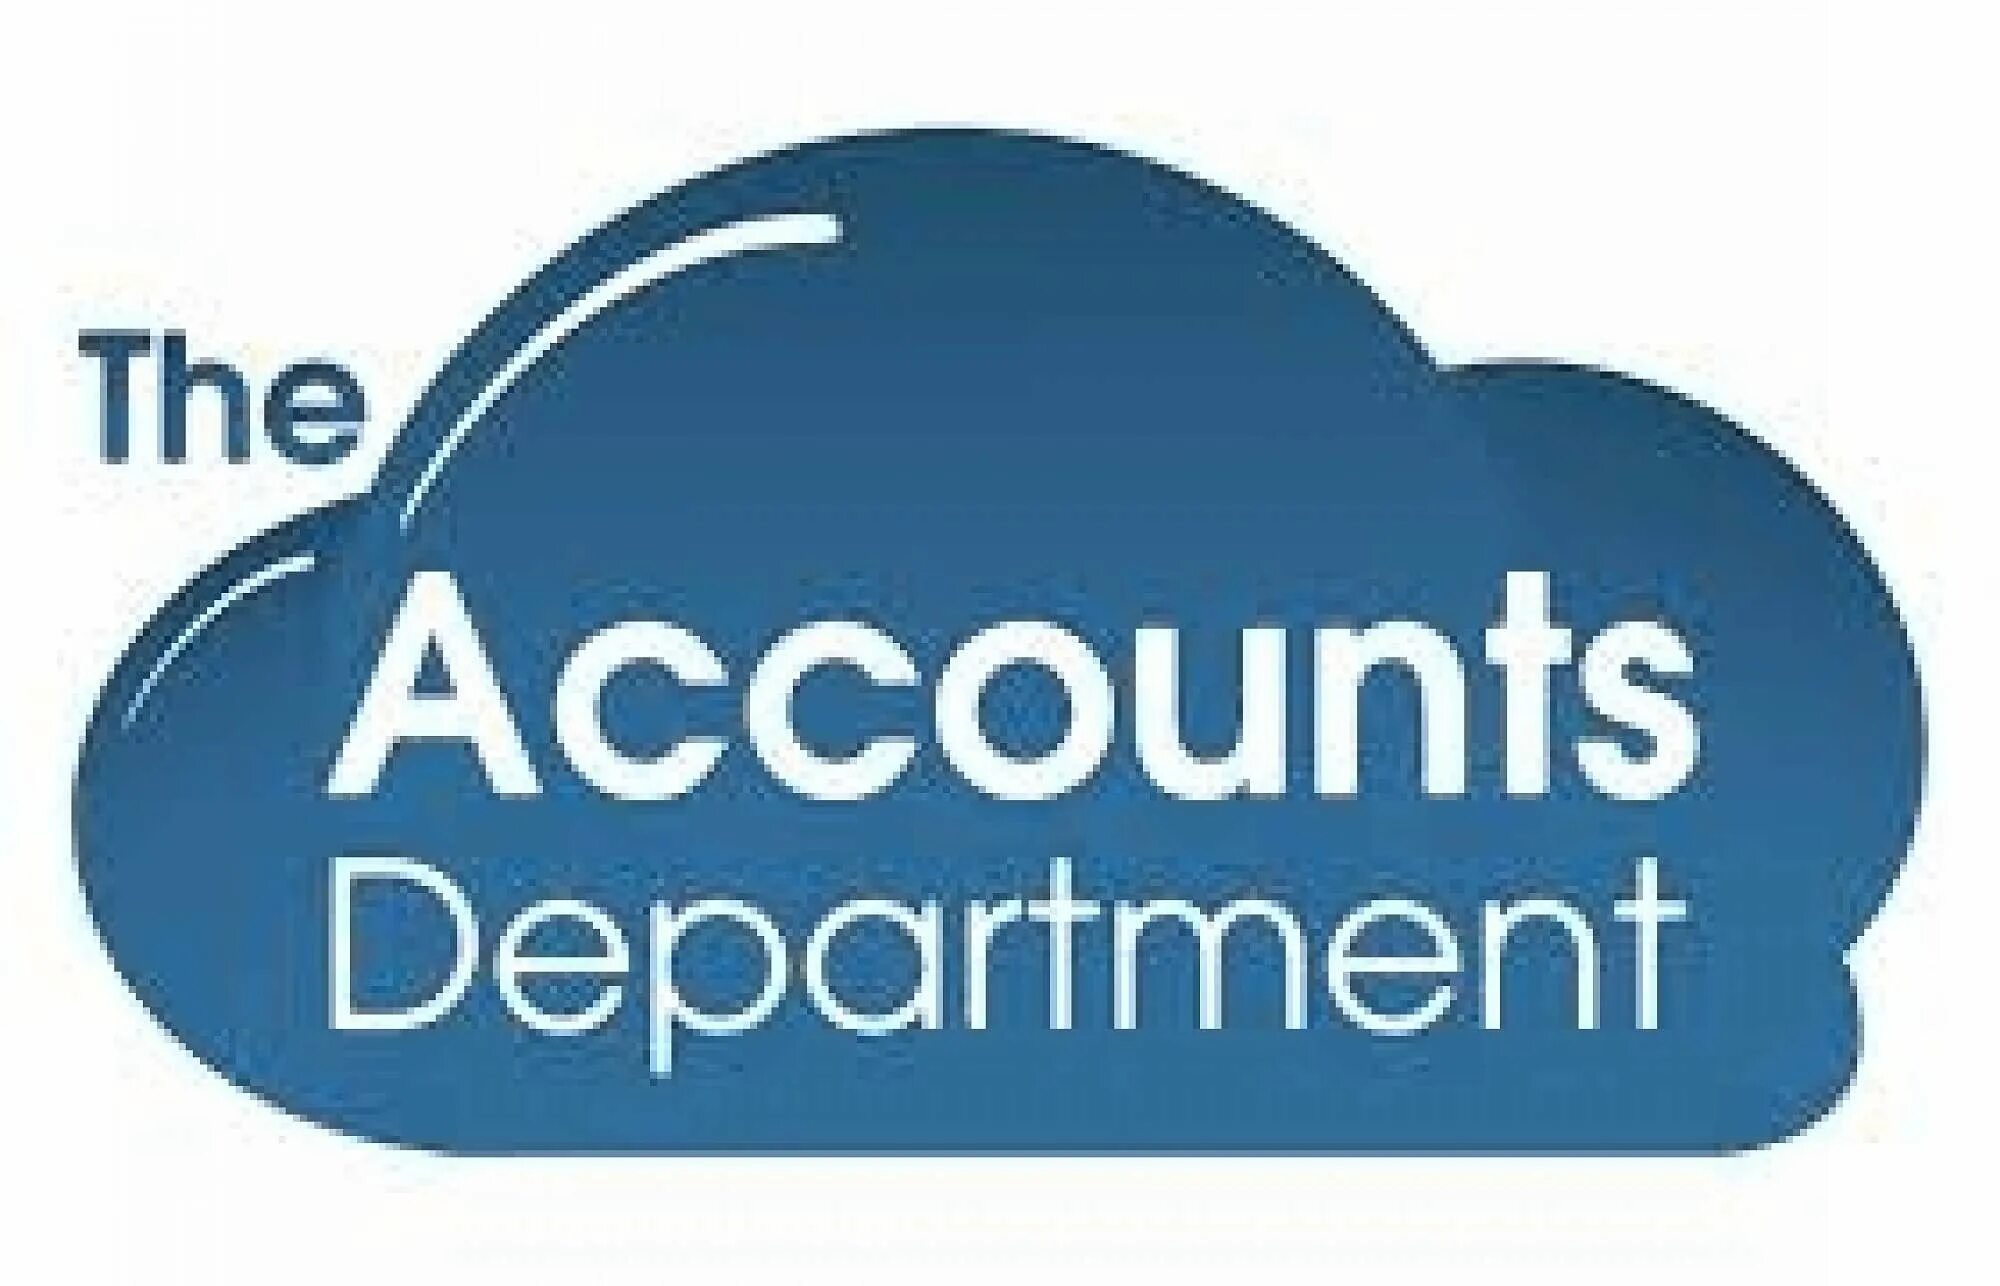 Pp account. Логотип аккаунта. Account логотип. Аккаунтинг. Лого учетной записи.